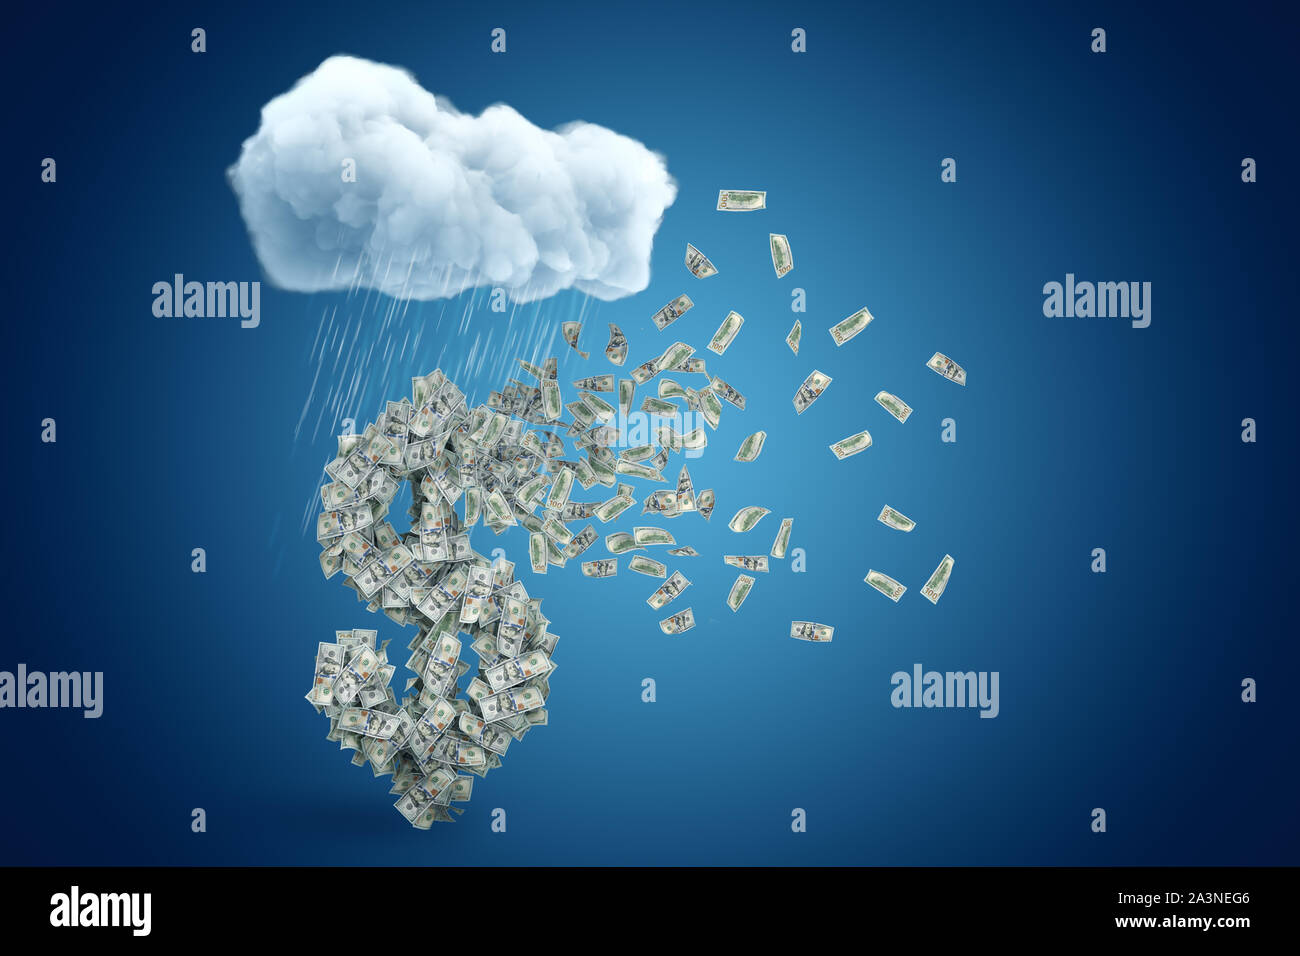 3D-Rendering von grossen Dollarzeichen mit vielen der Banknoten, die bereits begonnen haben, zu fliegen gebildet, unter regnet Cloud auf der blauen Gradienten Hintergrund Stockfoto